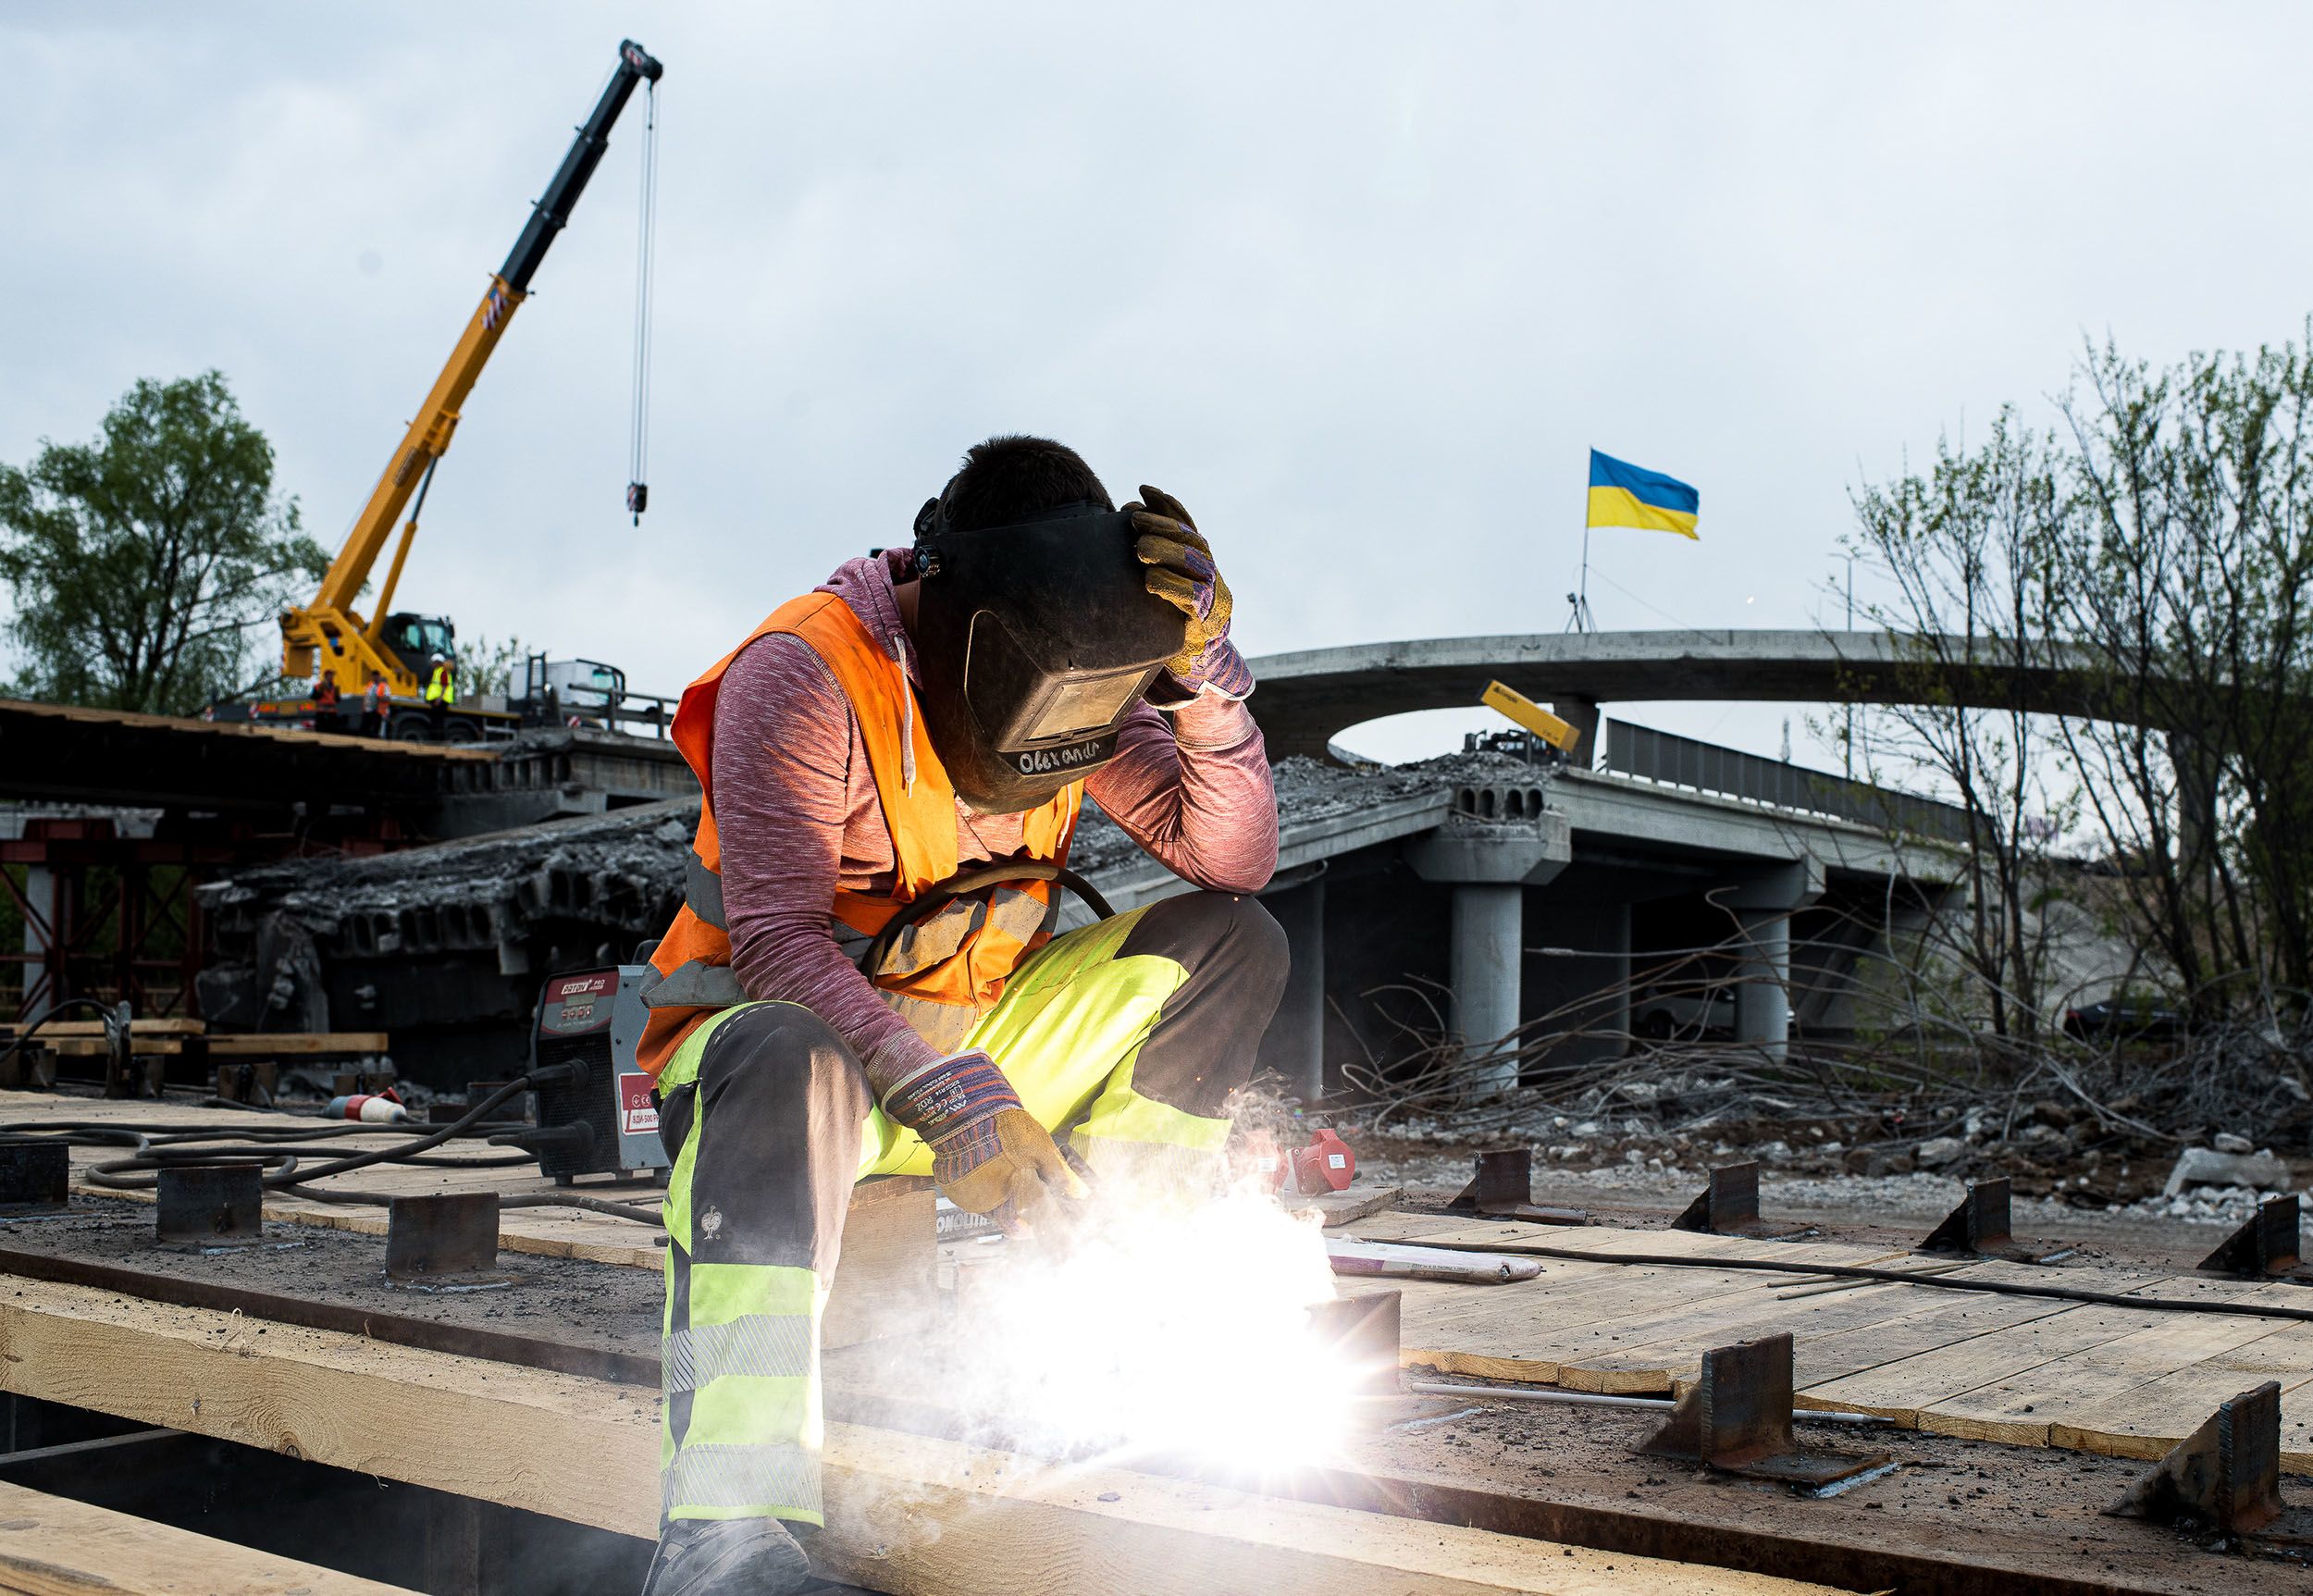 A welder working on a new bridge in Ukraine